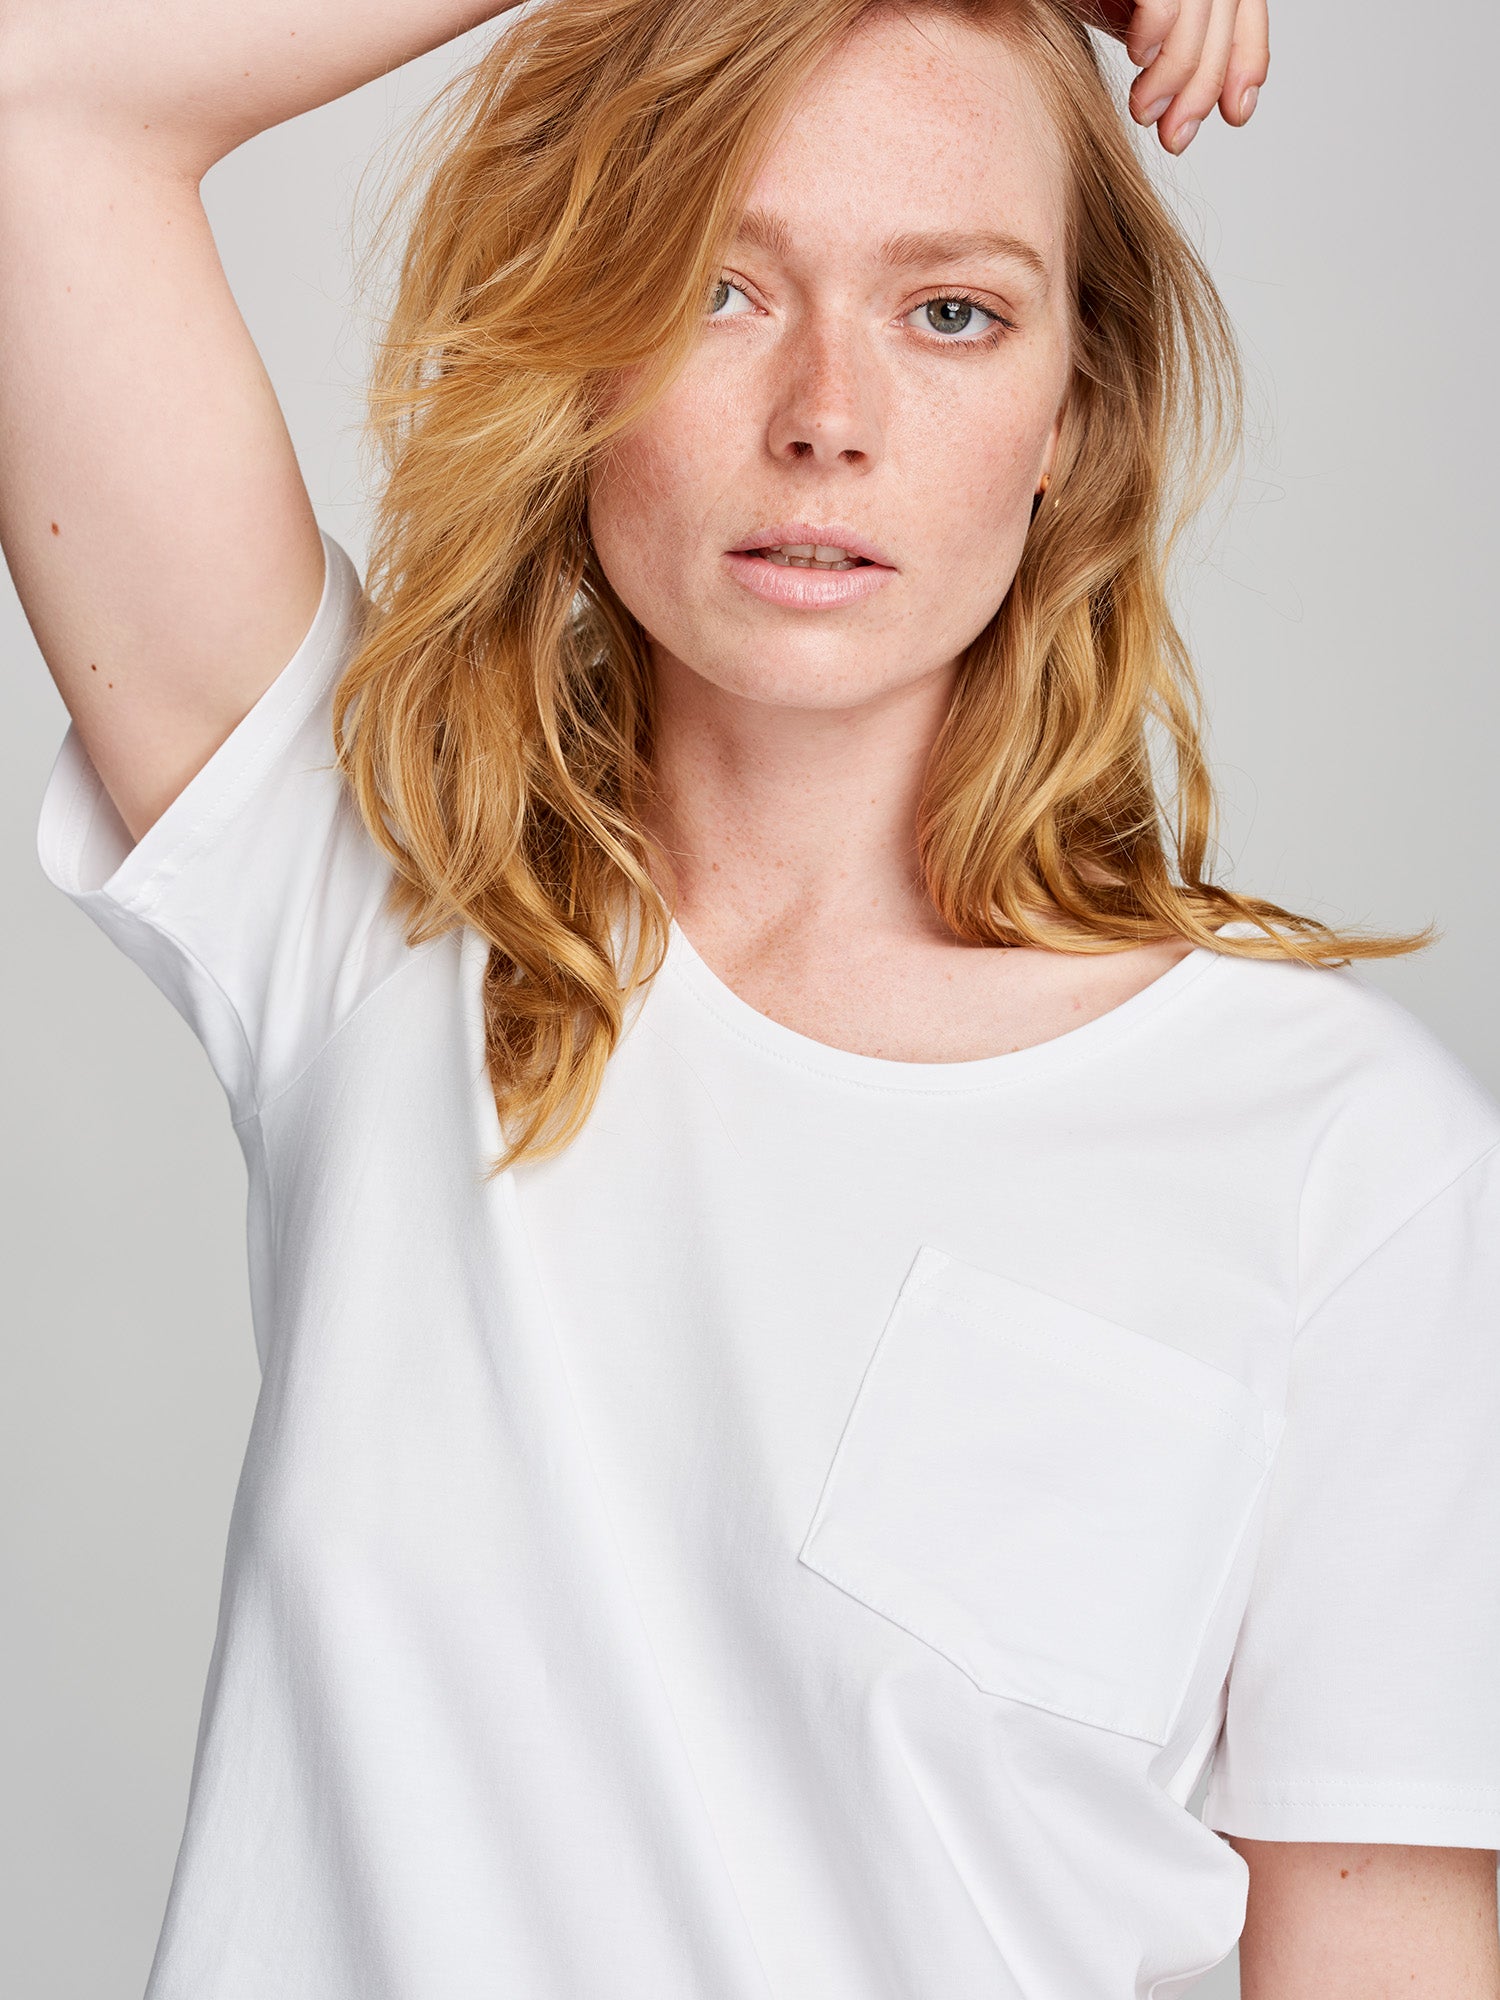 Naisten tyylikäs valkoinen Tasku t-paita pyöreällä pääntiellä. 